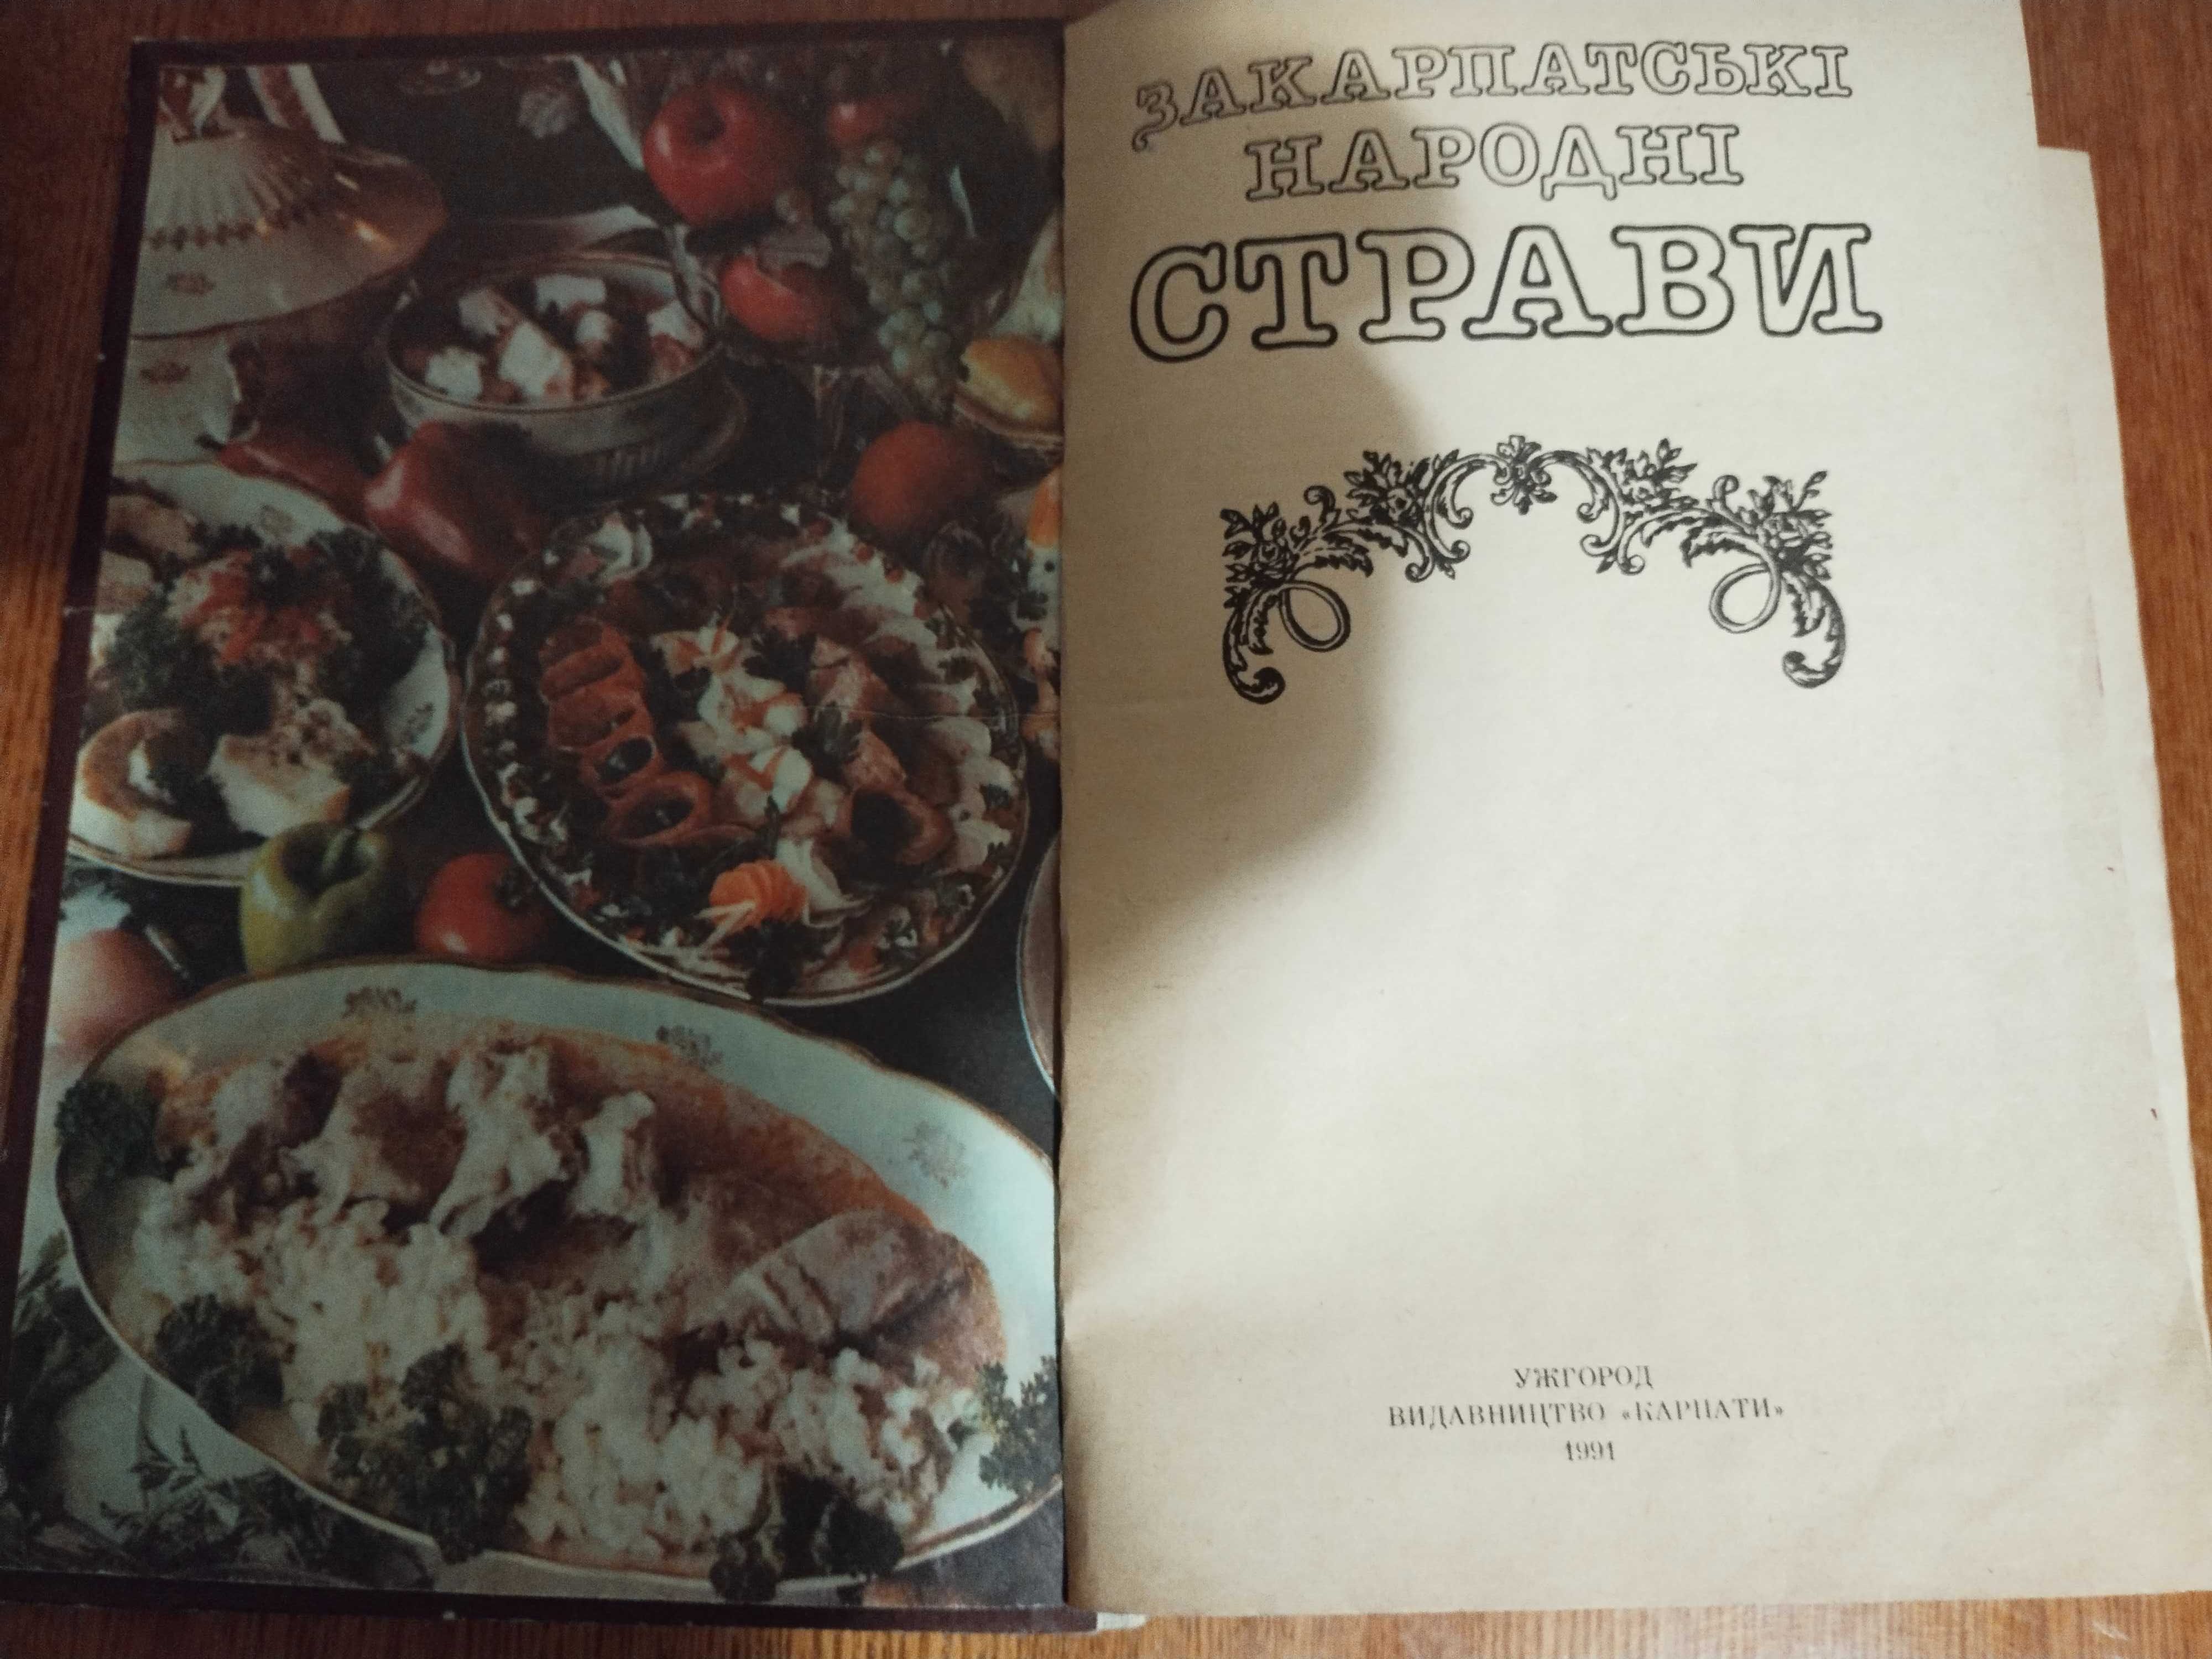 Продам книгу - Закарпатьскі  народні страви